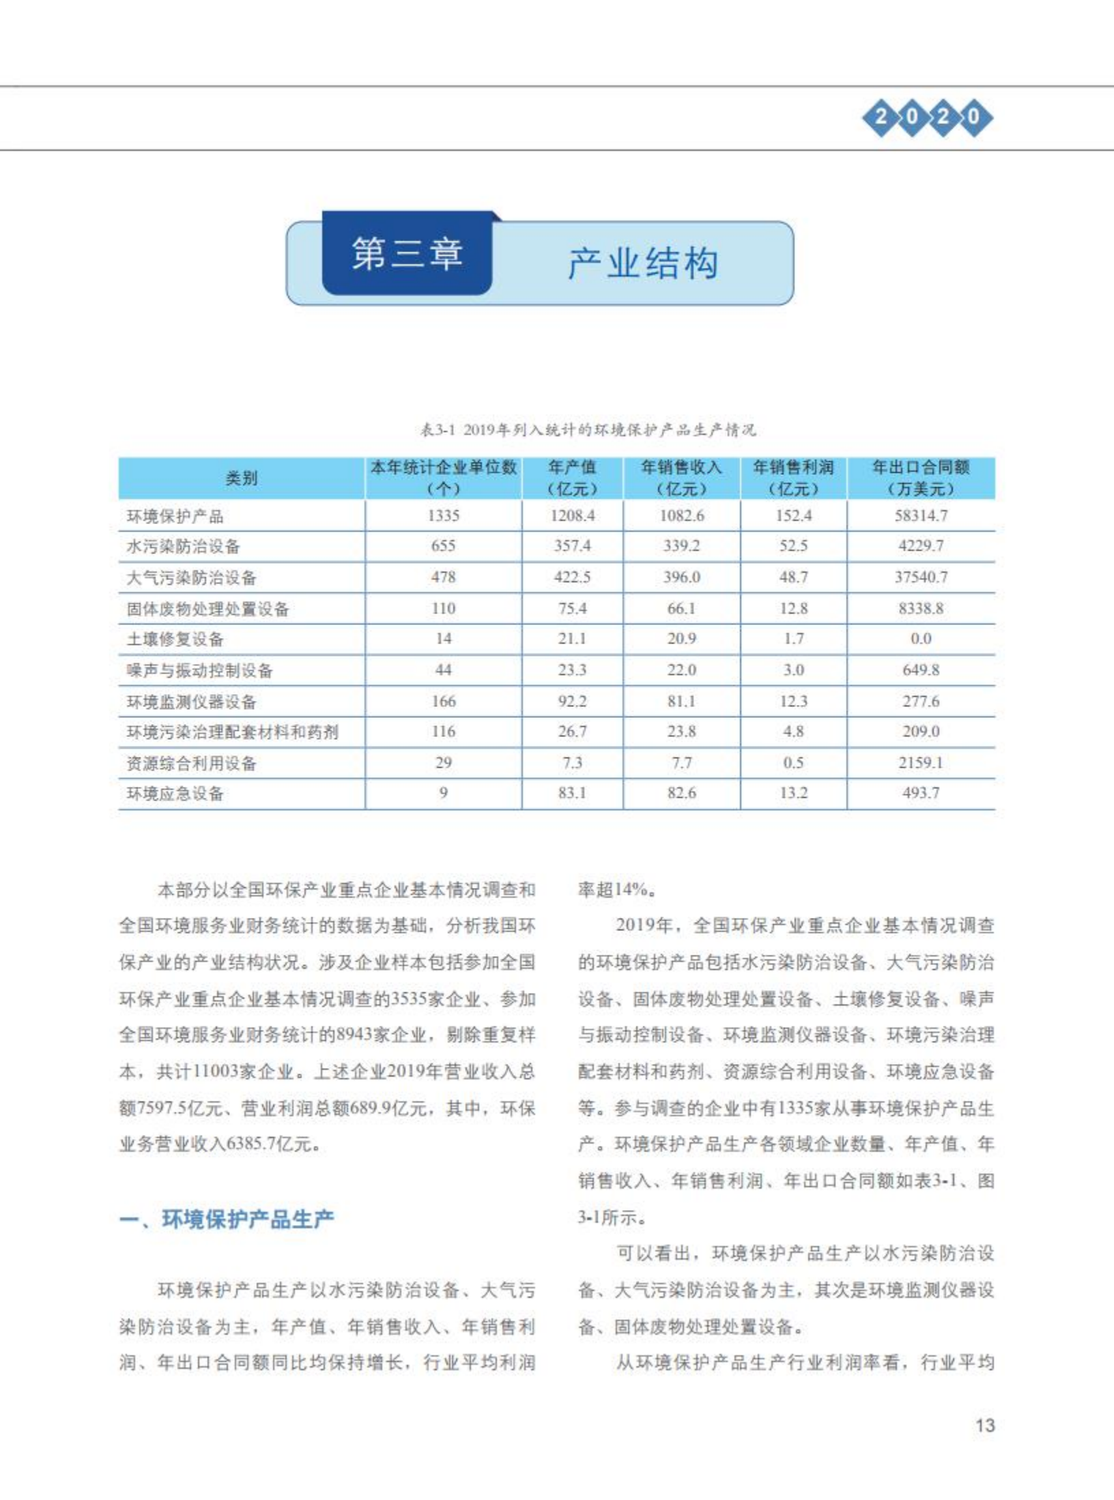 【2020】中国环保产业发展状况报告_14.png